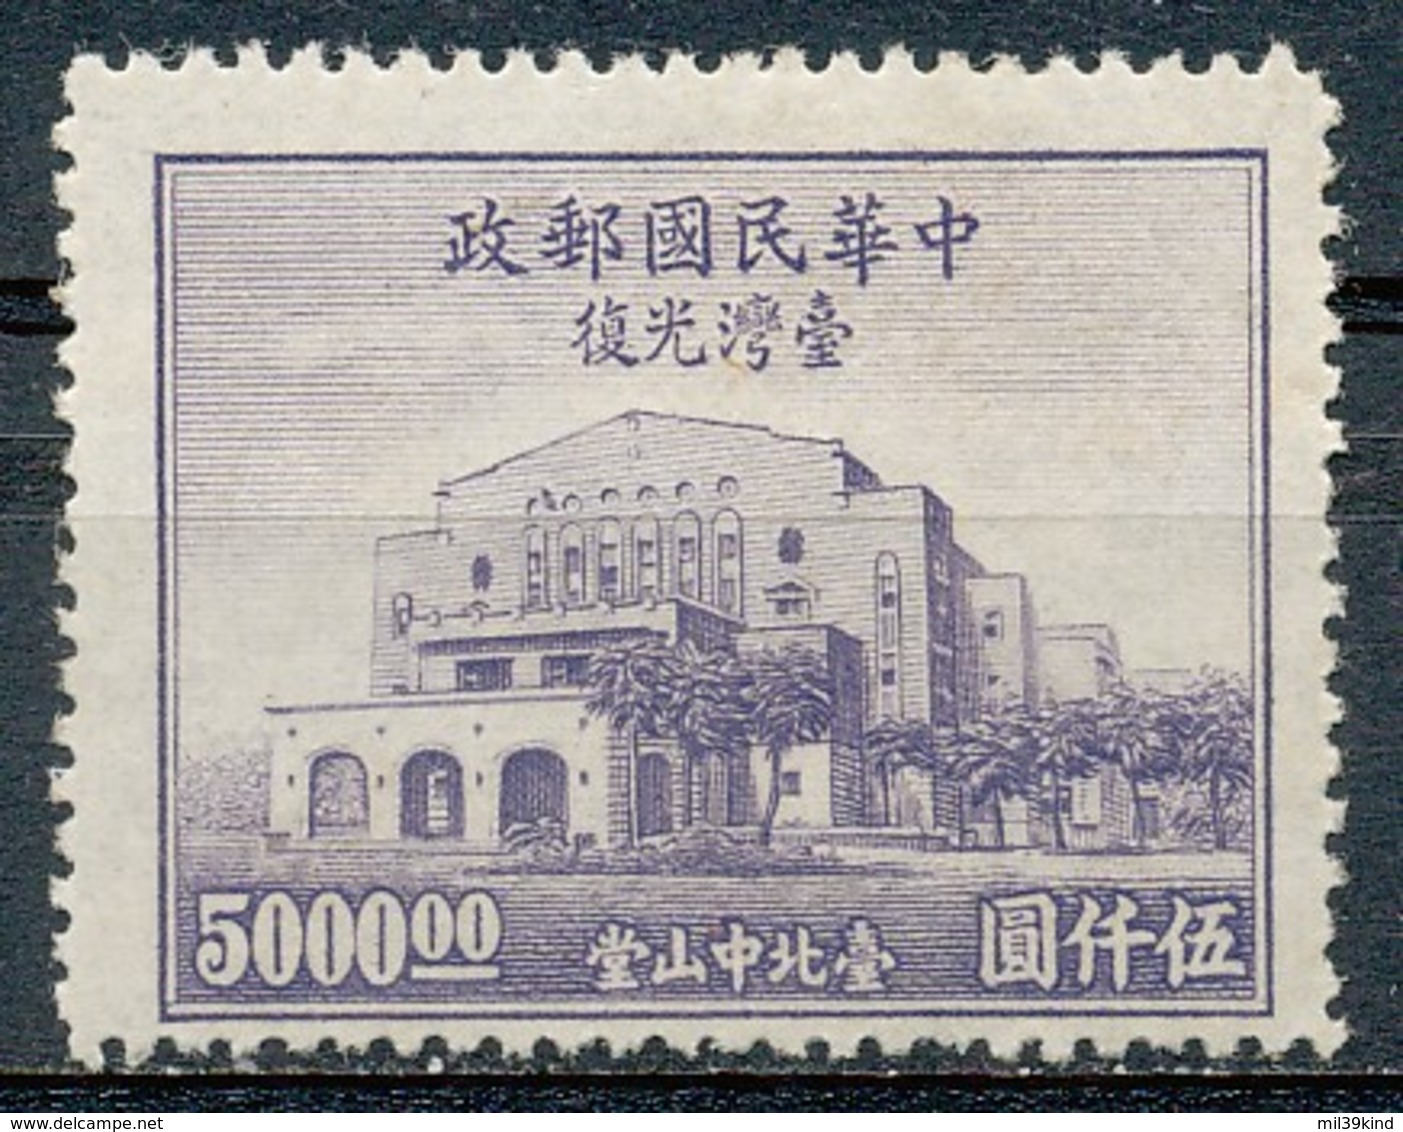 REPUBLIQUE DE CHINE  - 1947  - Neuf - 1912-1949 Republik